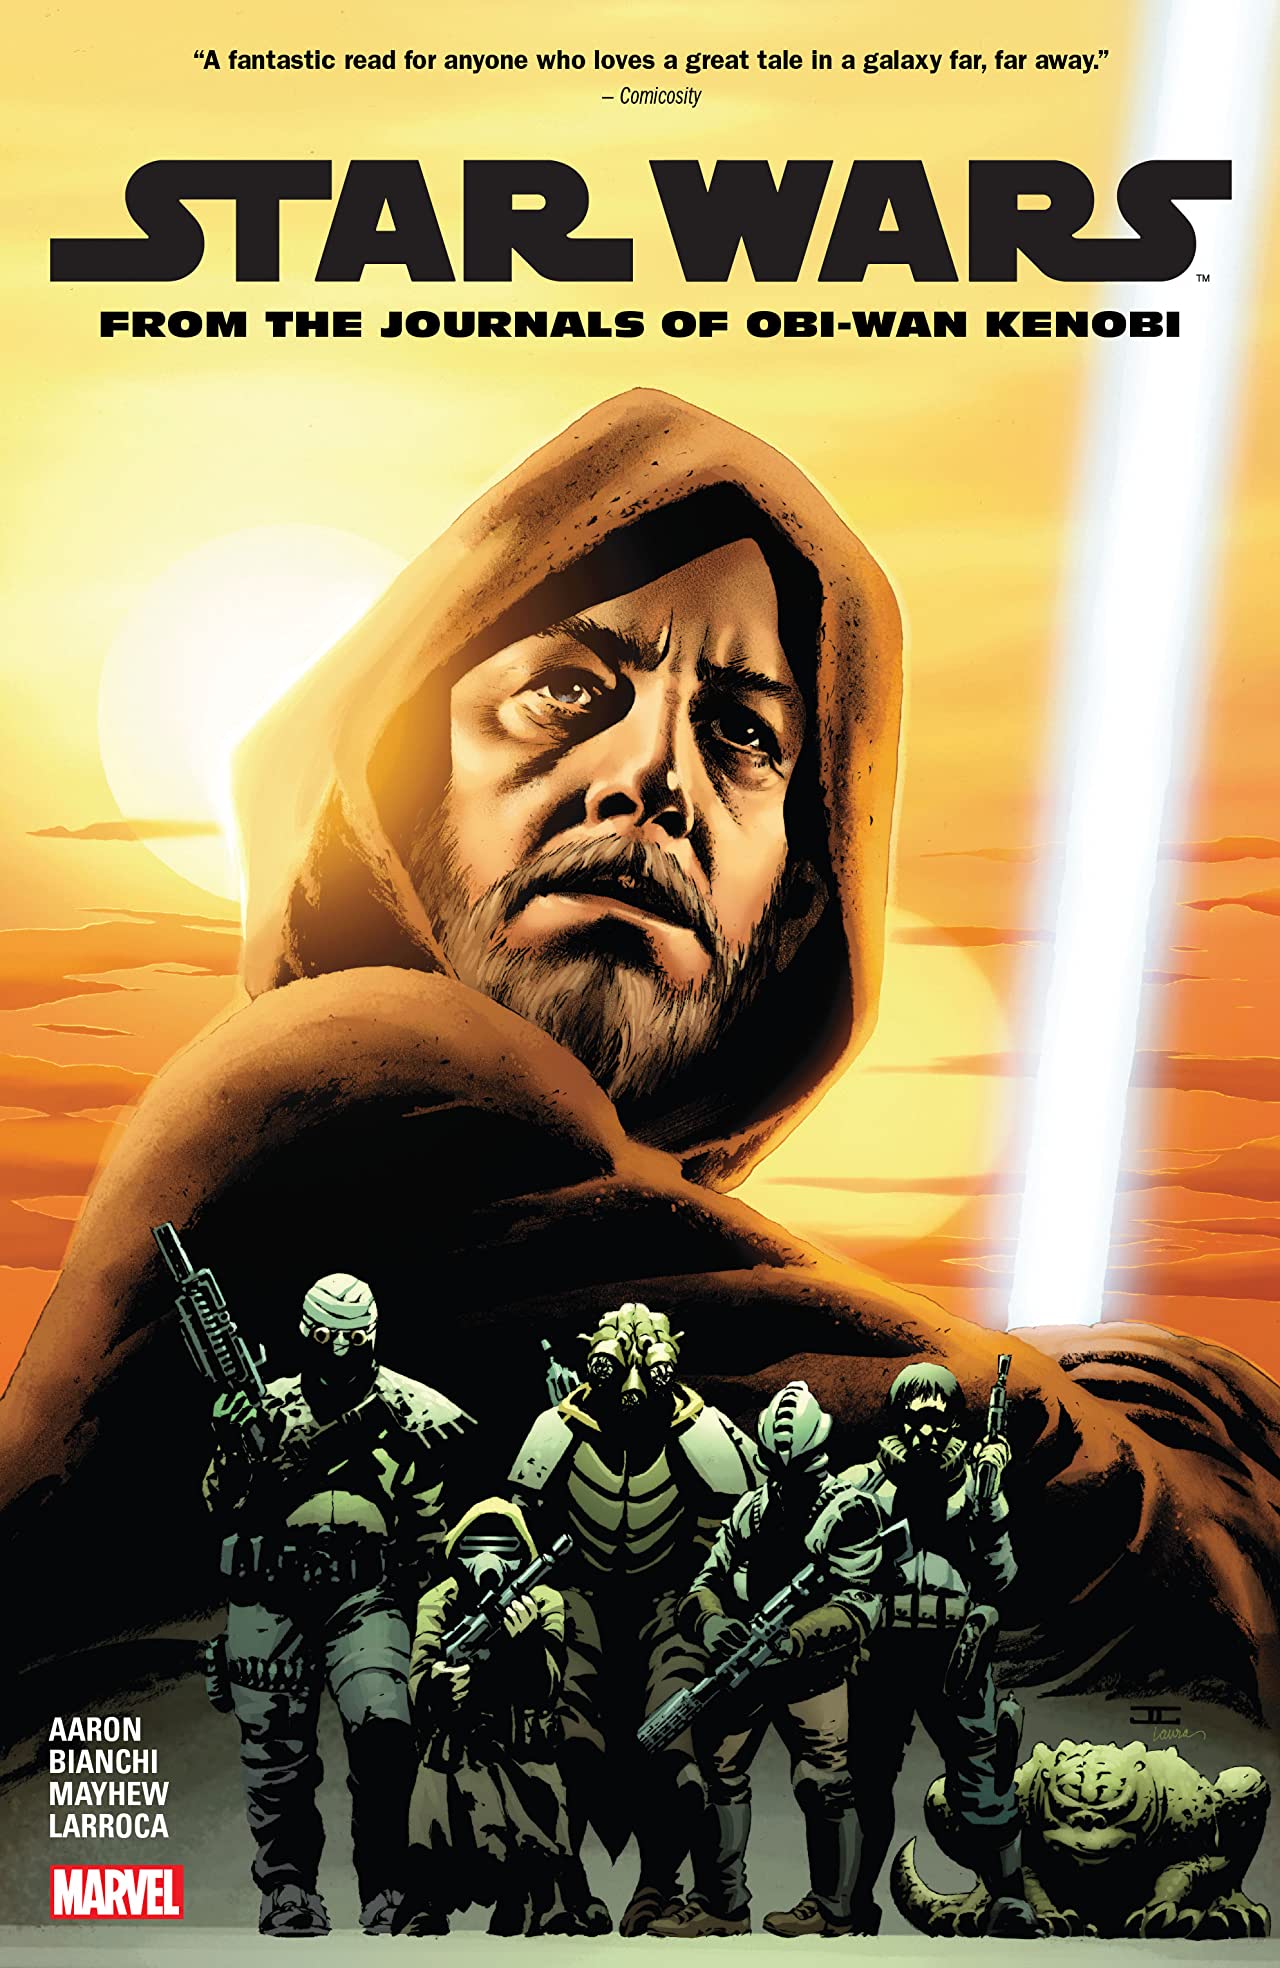 Star Wars Graphic Novel From Journals of Obi-Wan Kenobi